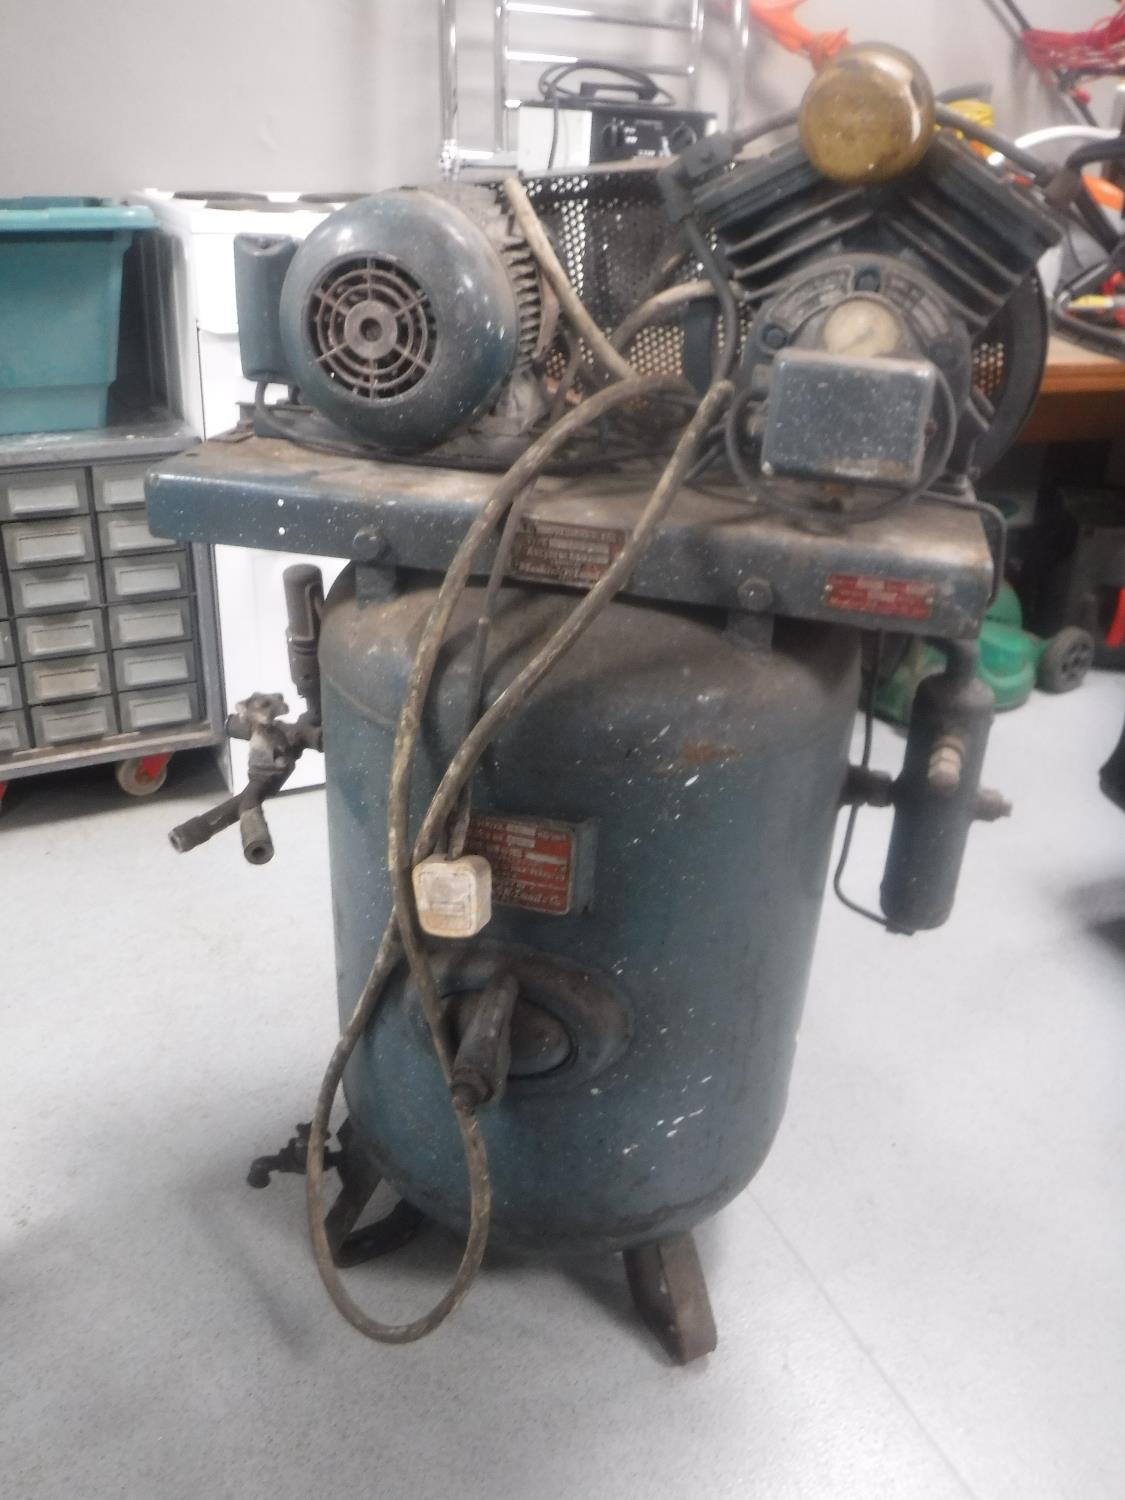 A vintage industrial air compressor